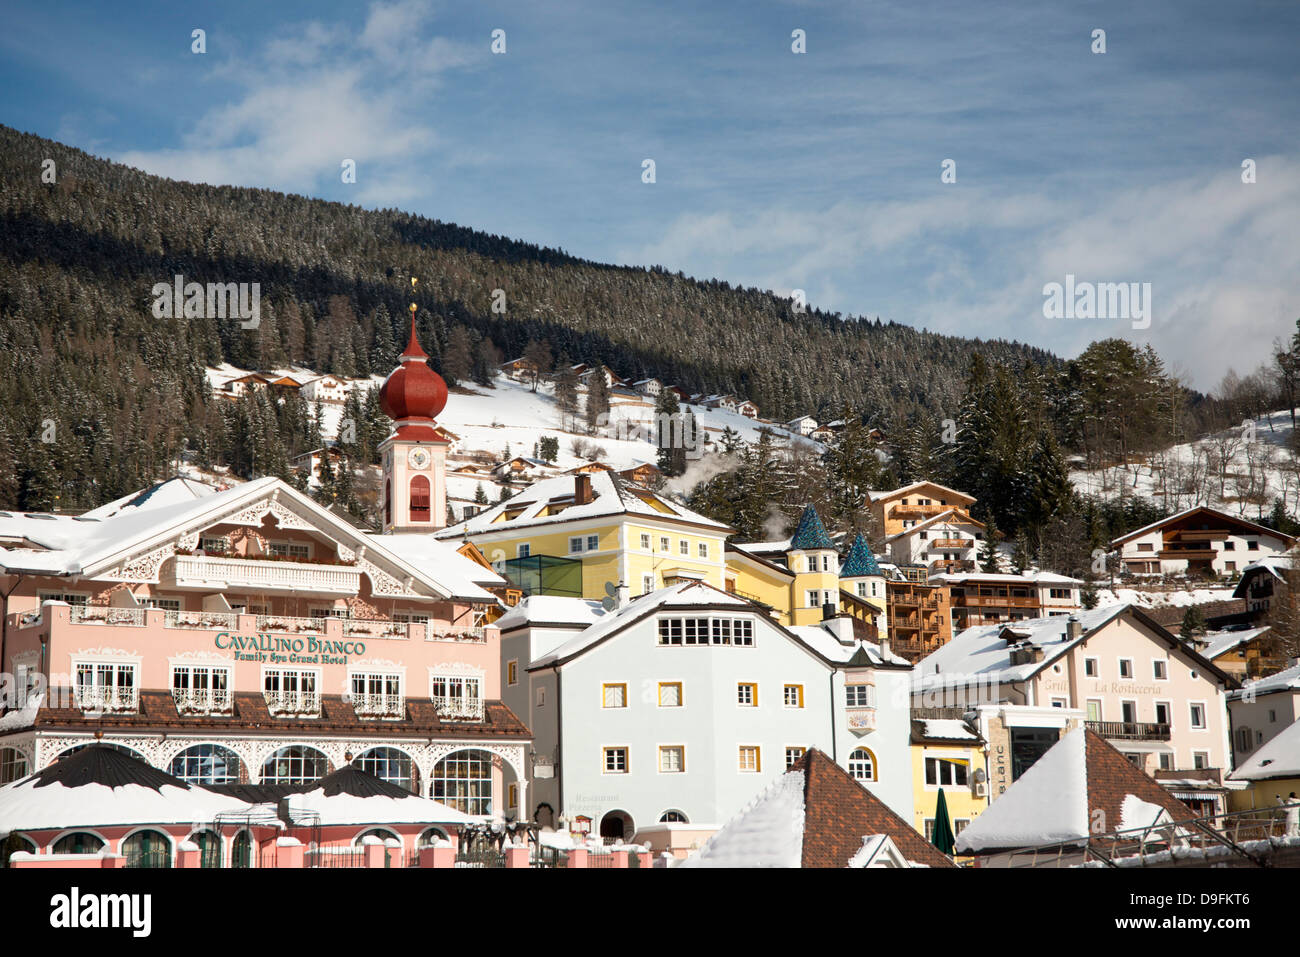 La ville de Ortisei dans les dolomites près de la station de ski Alpe di Siusi, le Tyrol du Sud, Italie Banque D'Images